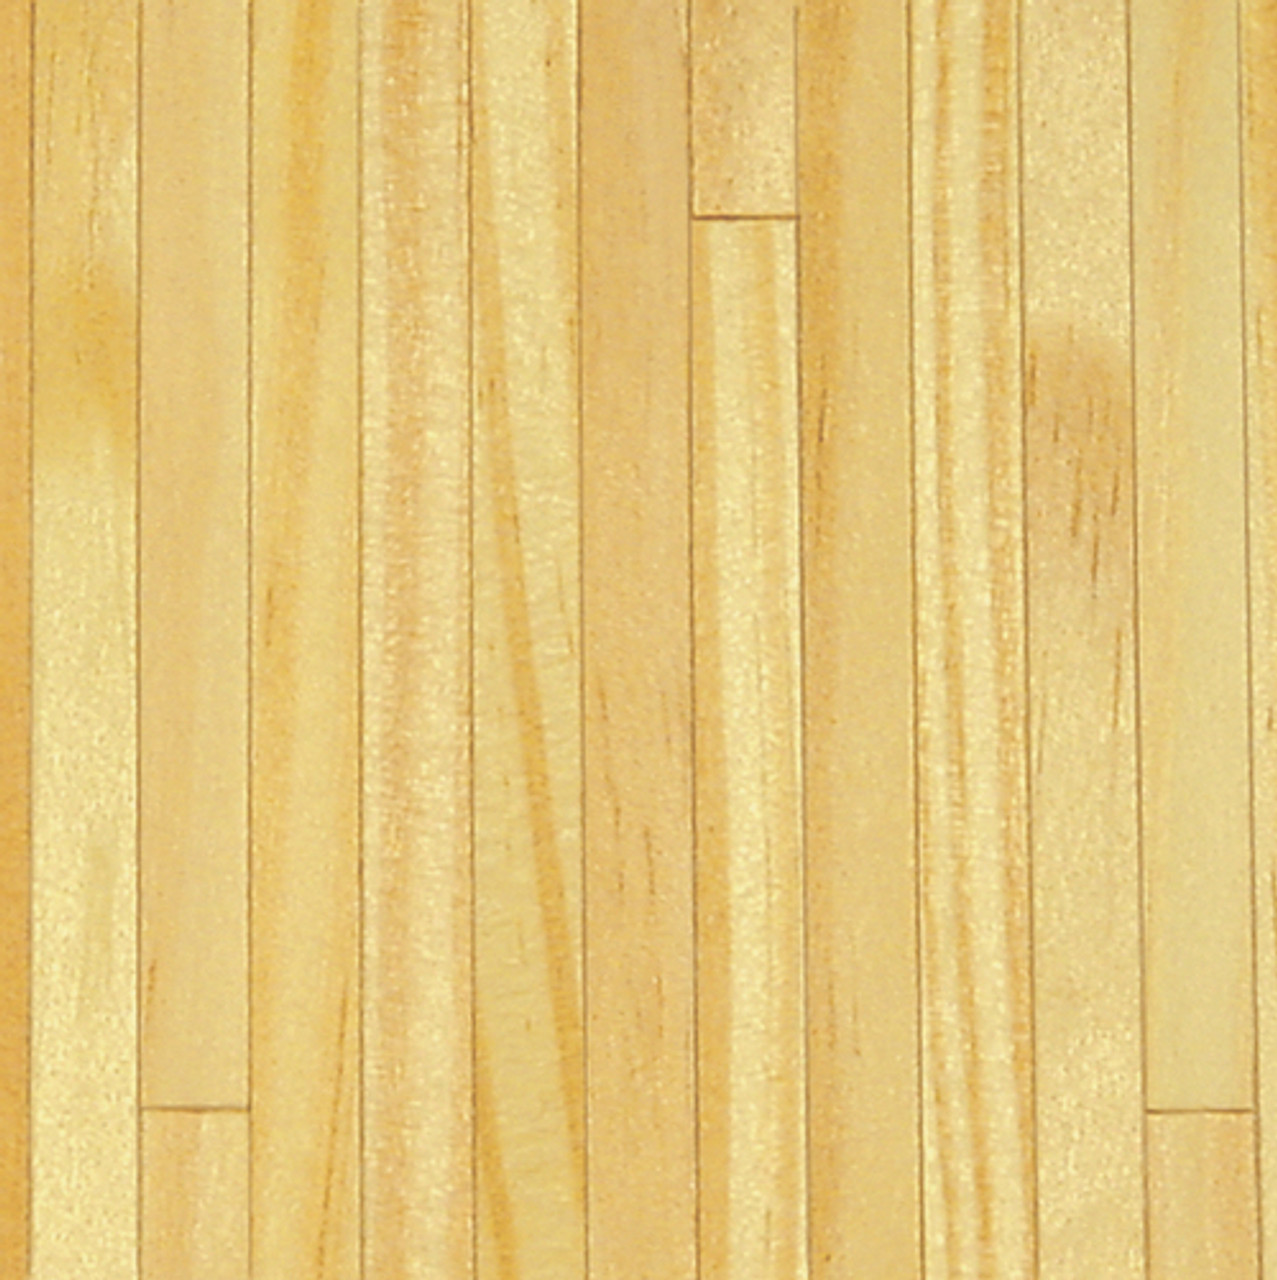 Southern Pine Wood Floor (HW2387)